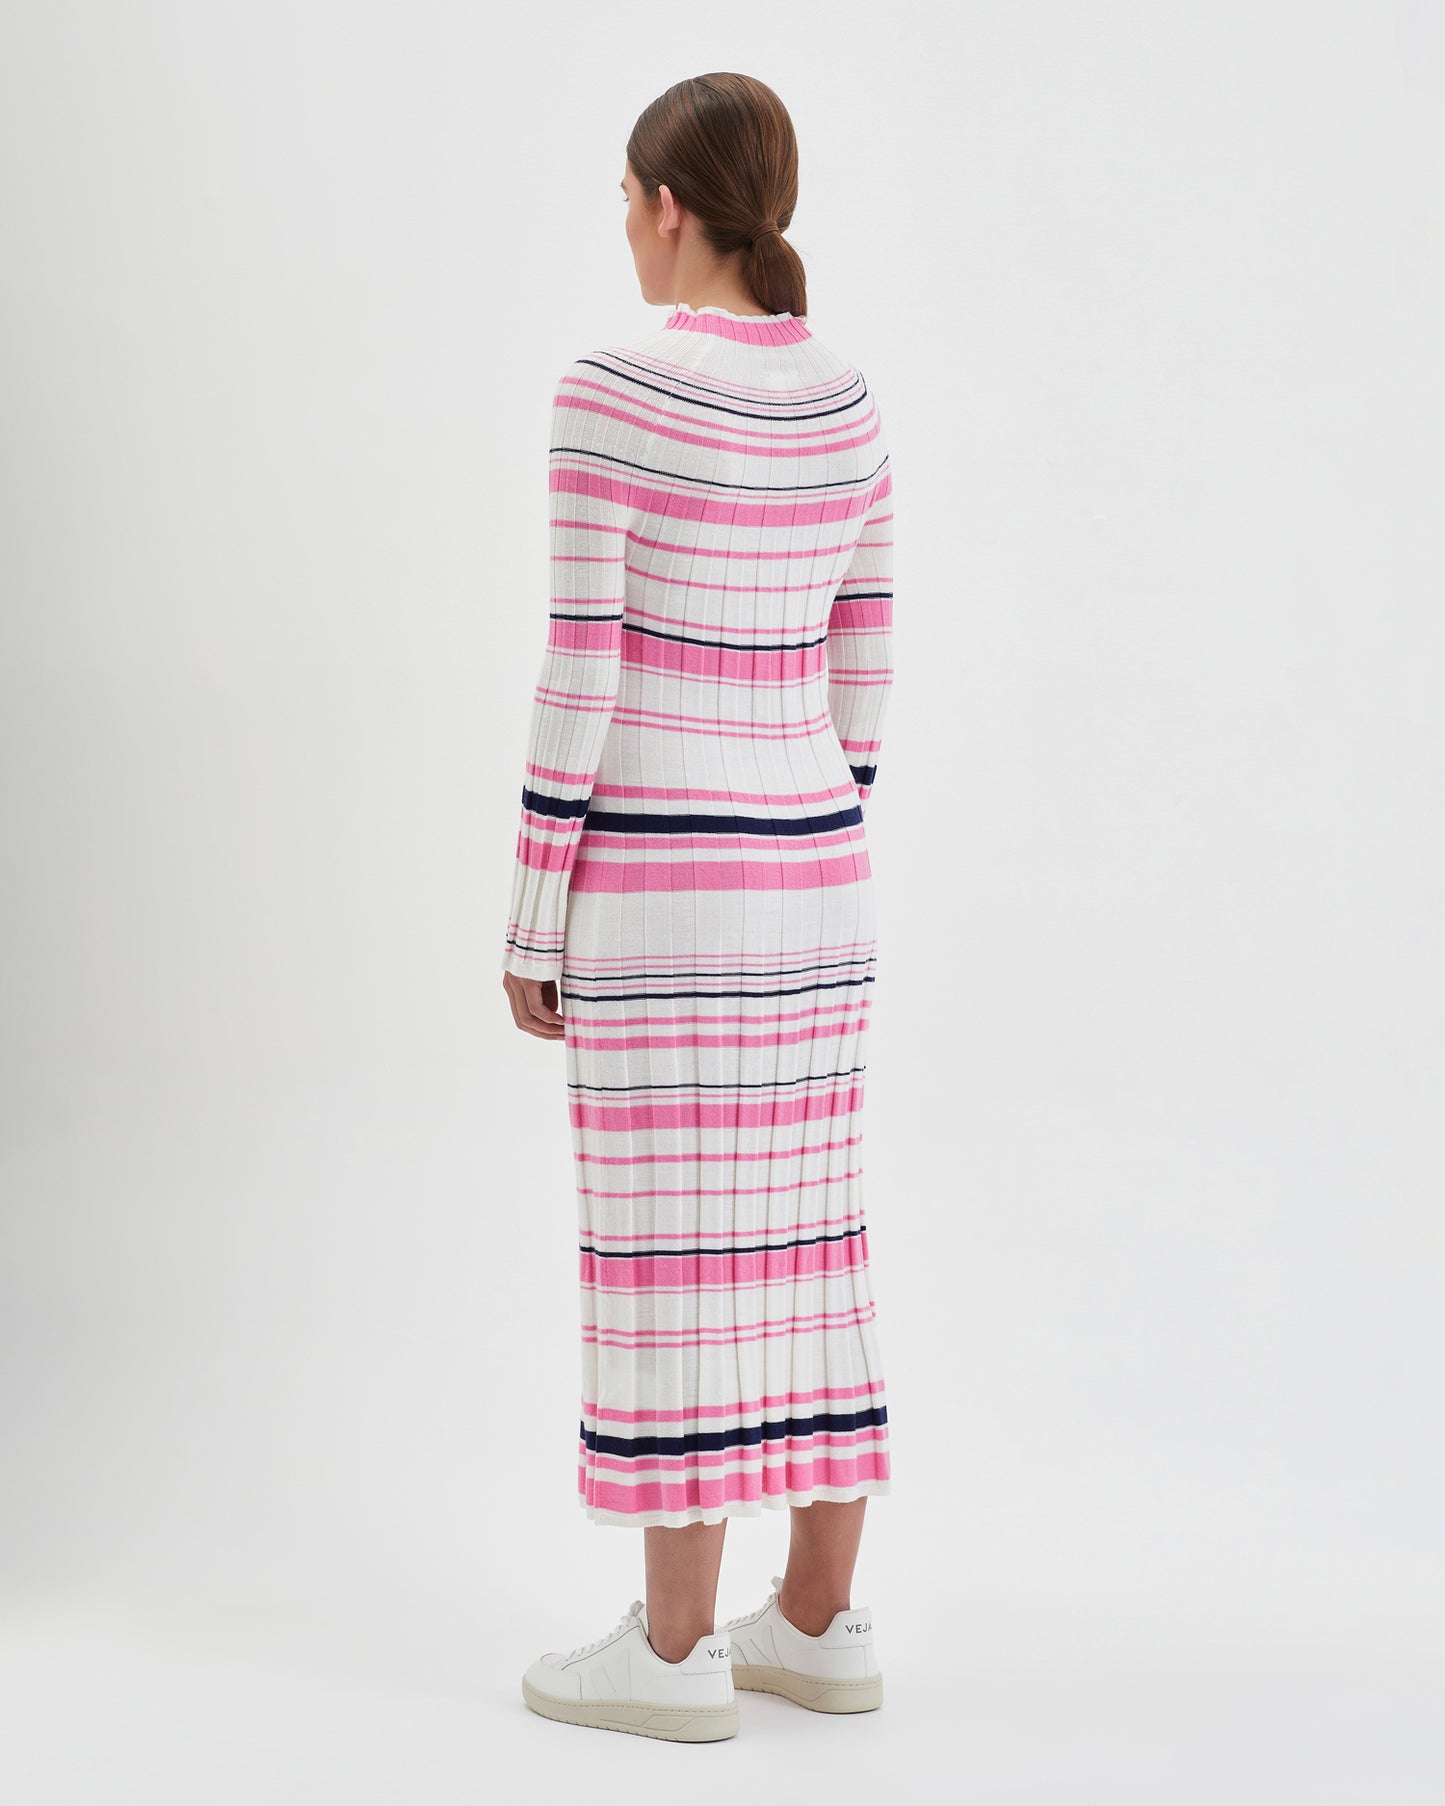 Pre-Sale Iris & Wool - Poppy Dress - Stripe